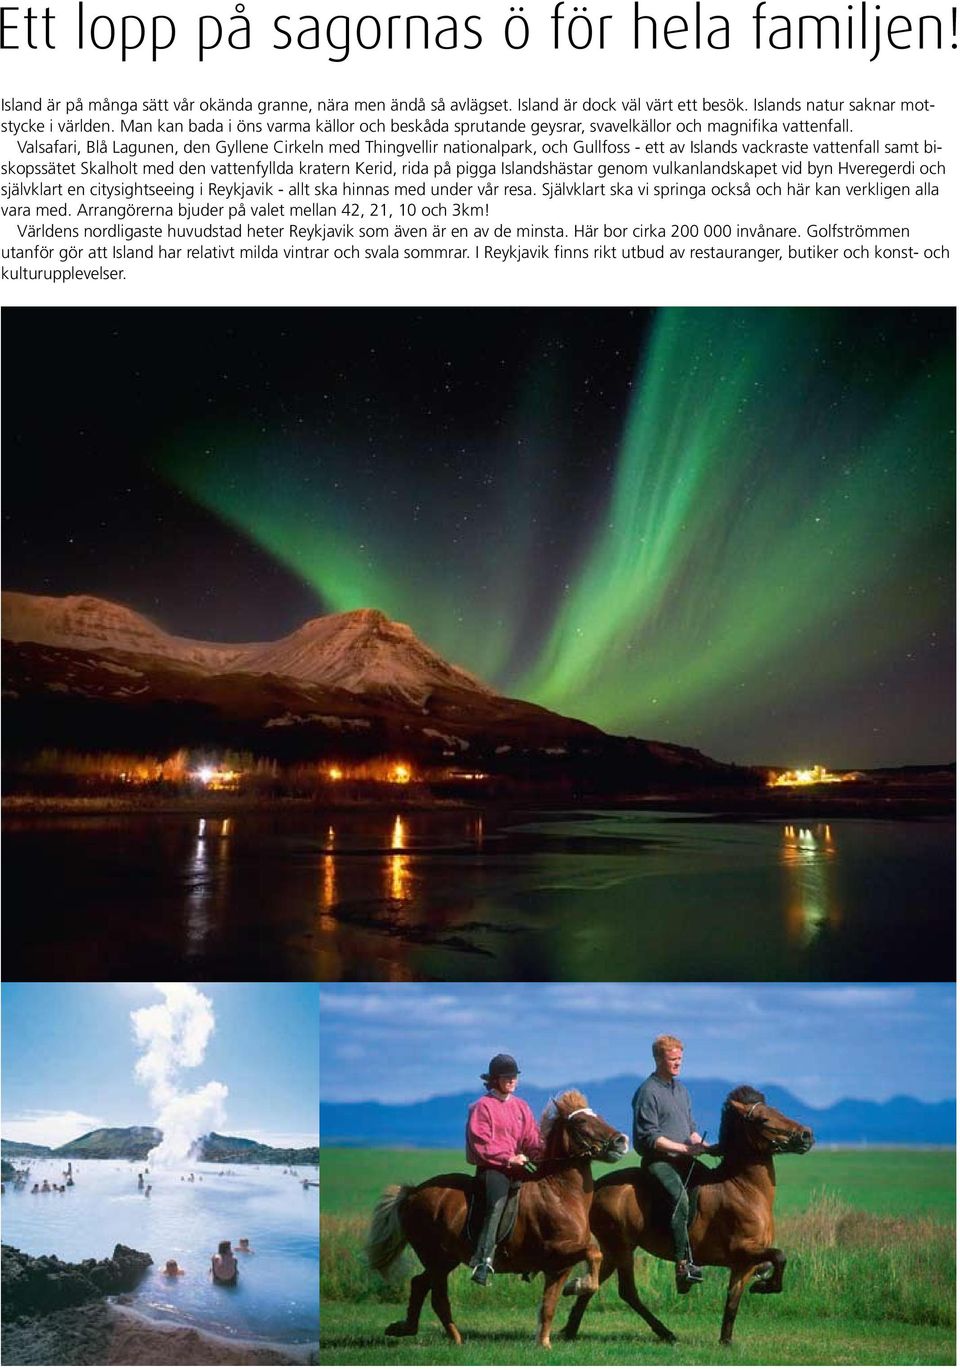 Valsafari, Blå Lagunen, den Gyllene Cirkeln med Thingvellir nationalpark, och Gullfoss - ett av Islands vackraste vattenfall samt biskopssätet Skalholt med den vattenfyllda kratern Kerid, rida på